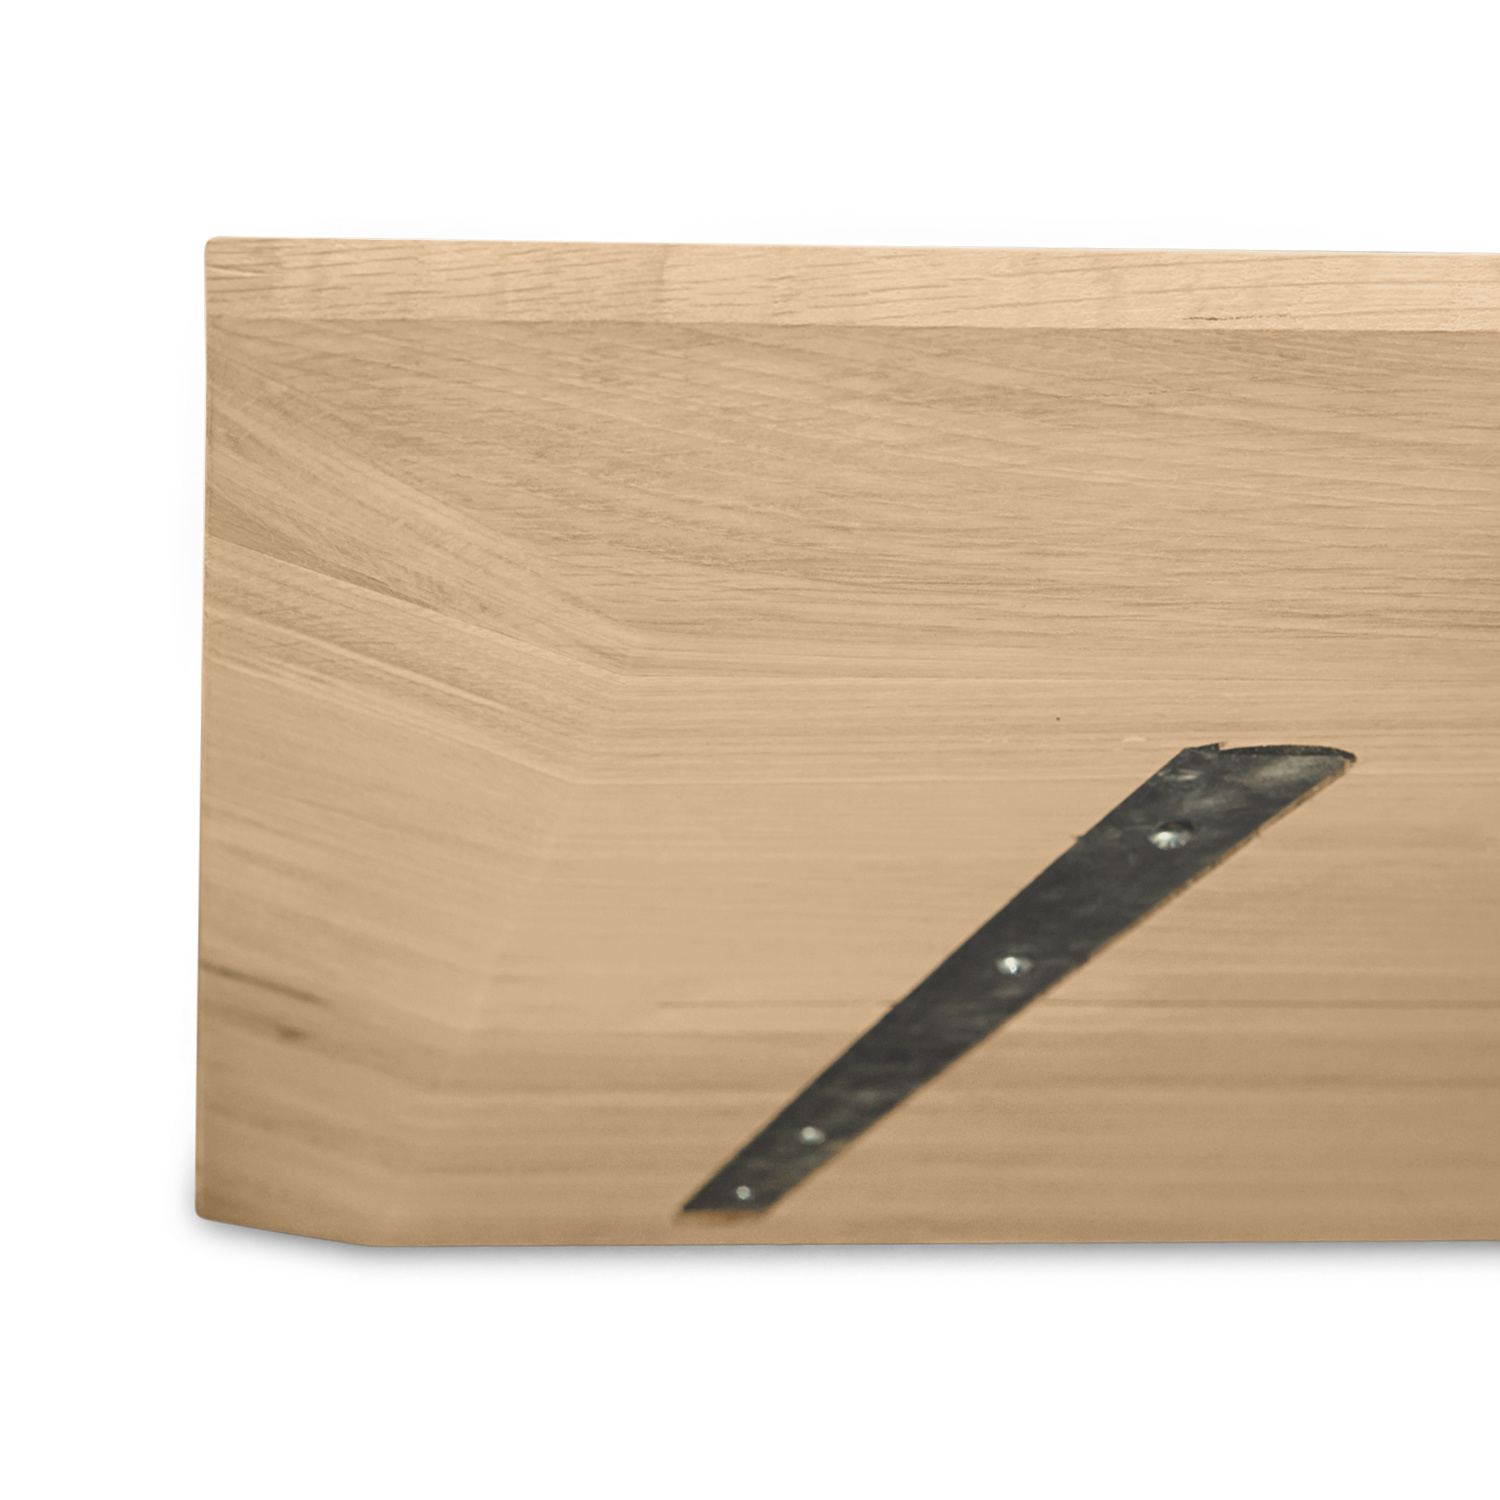  Tischplatte Eiche - Schweizer Kante - nach Maß - 3 cm dick - Eichenholz A-Qualität - Eiche Tischplatte massiv - verleimt & künstlich getrocknet (HF 8-12%) - 50-120x50-350 cm